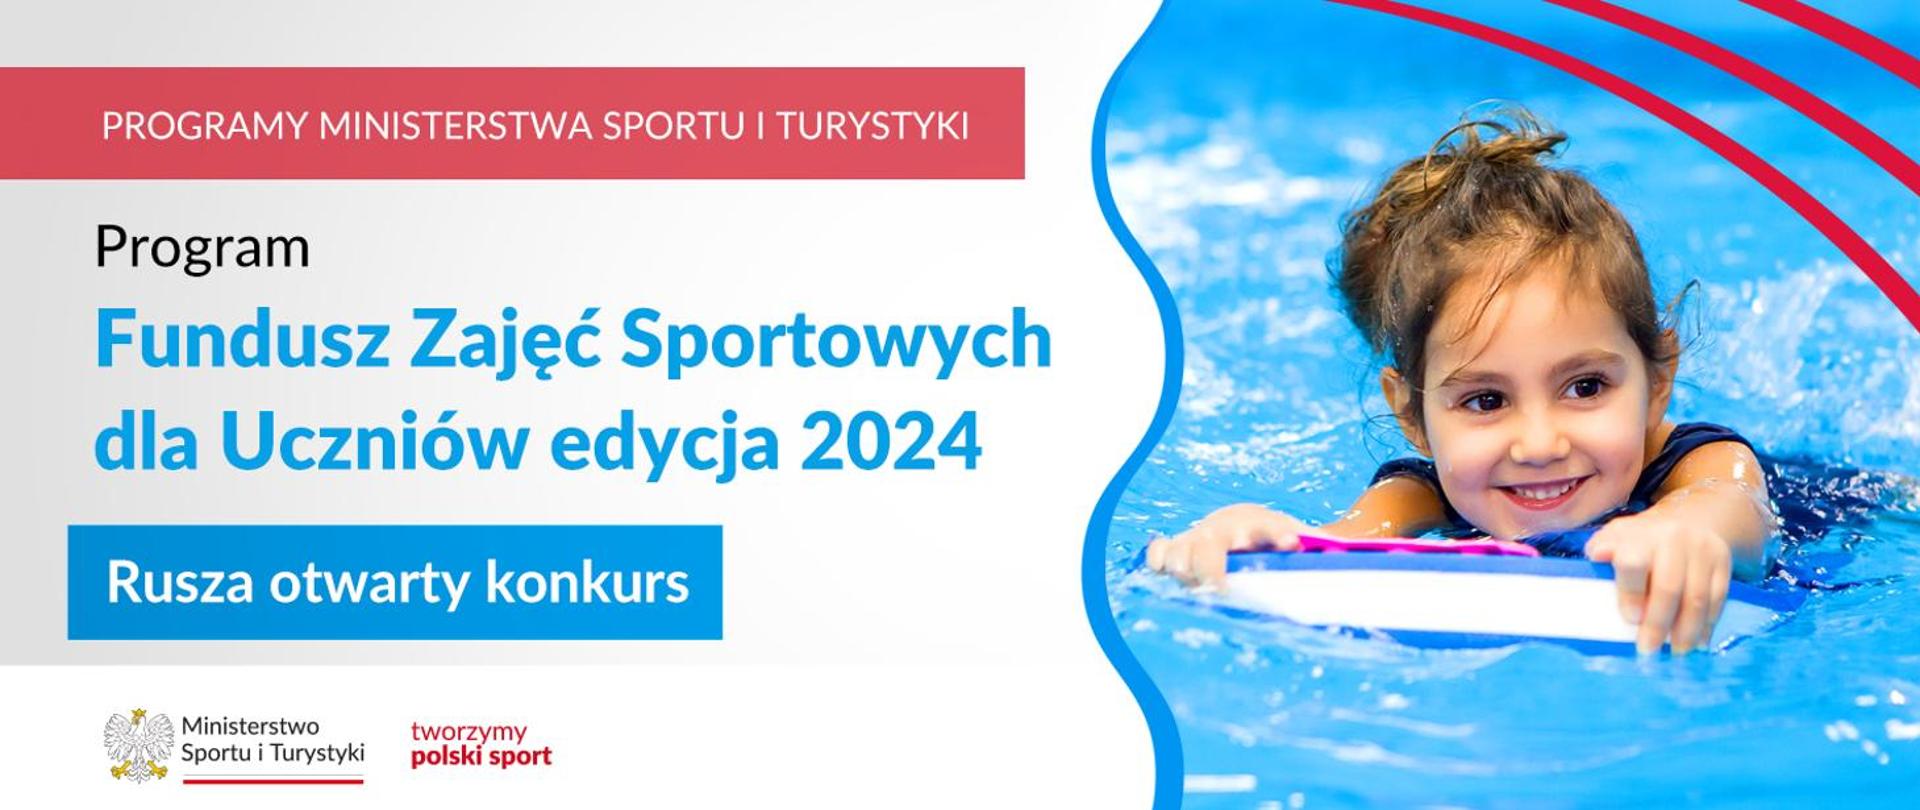 Rusza otwarty konkurs na dofinansowanie zajęć sportowych dla uczniów – edycja 2024